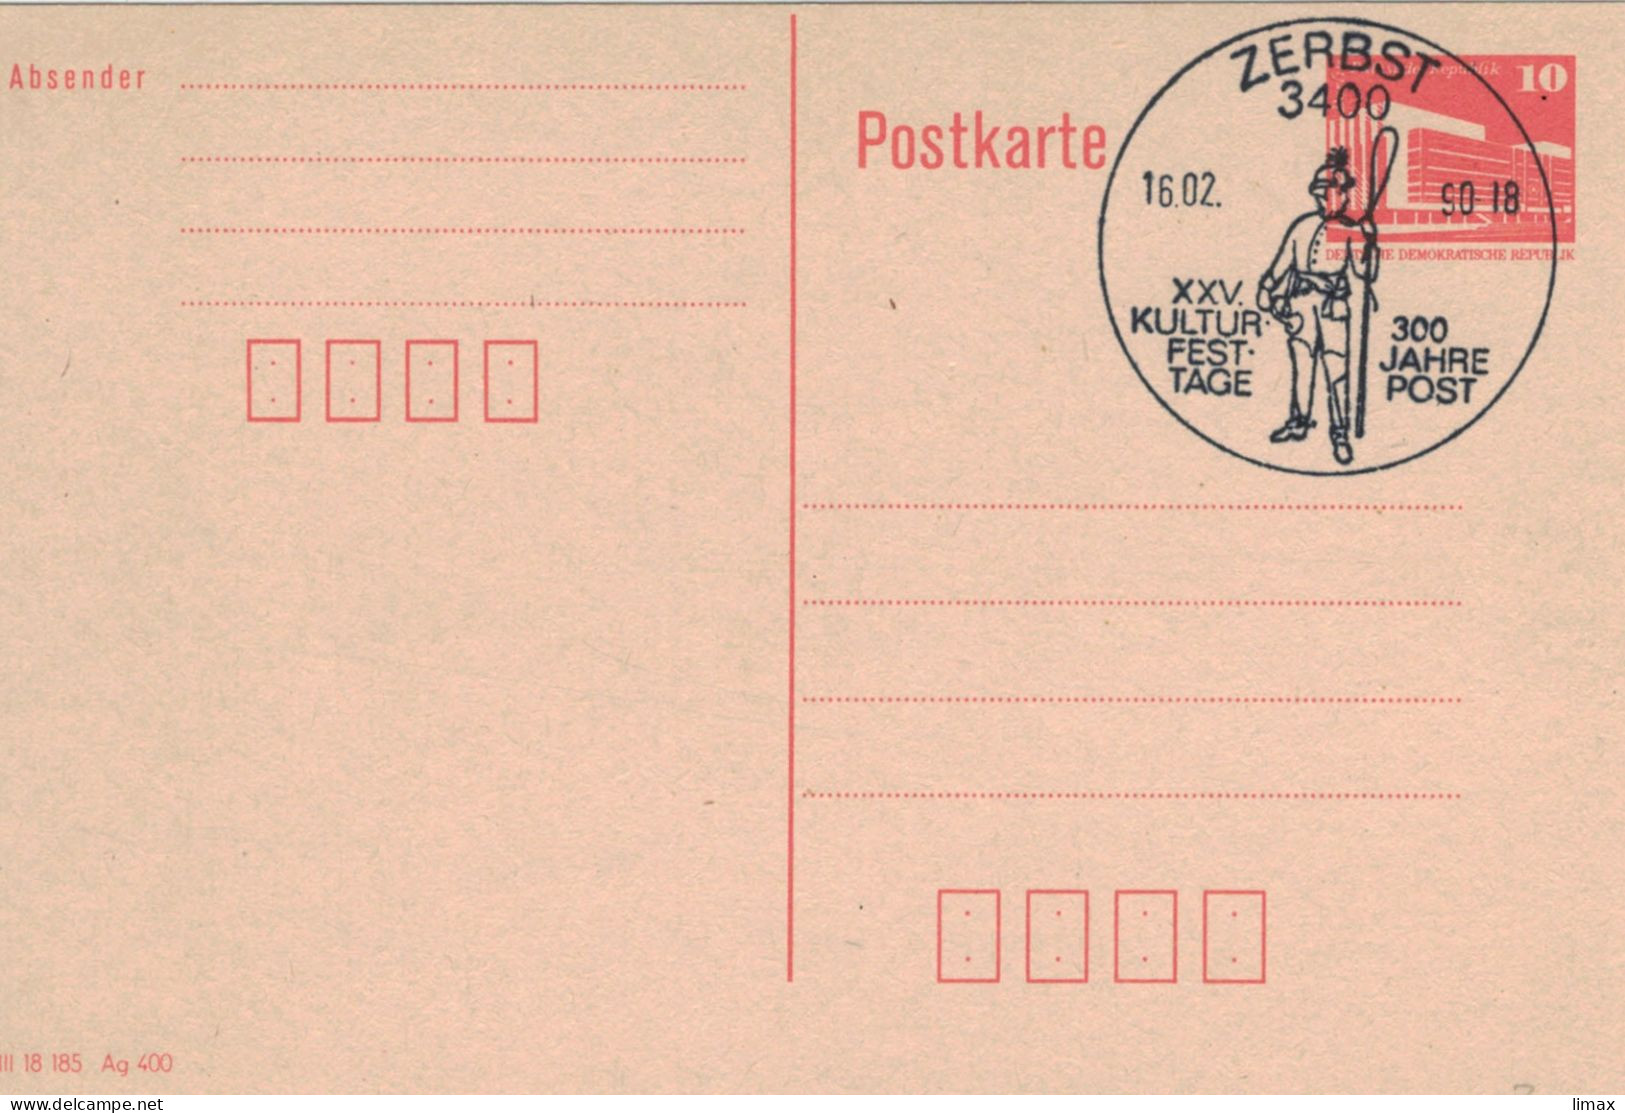 Ganzsache 3400 Zerbst 1990 Kultur-Fest-Tage - Postkarten - Gebraucht